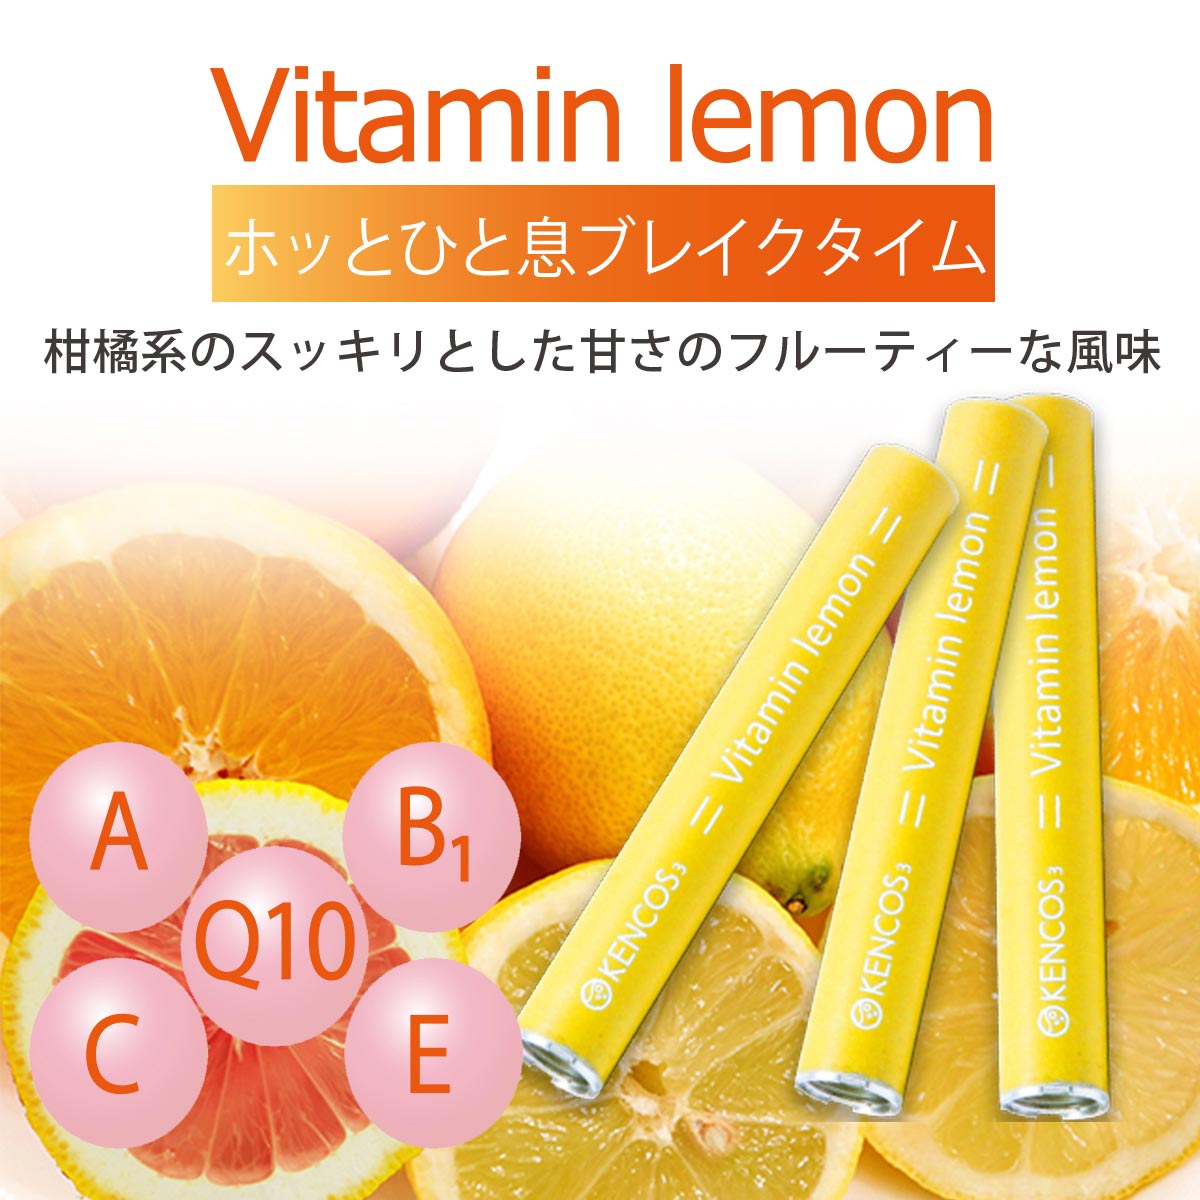 vitamin lemon